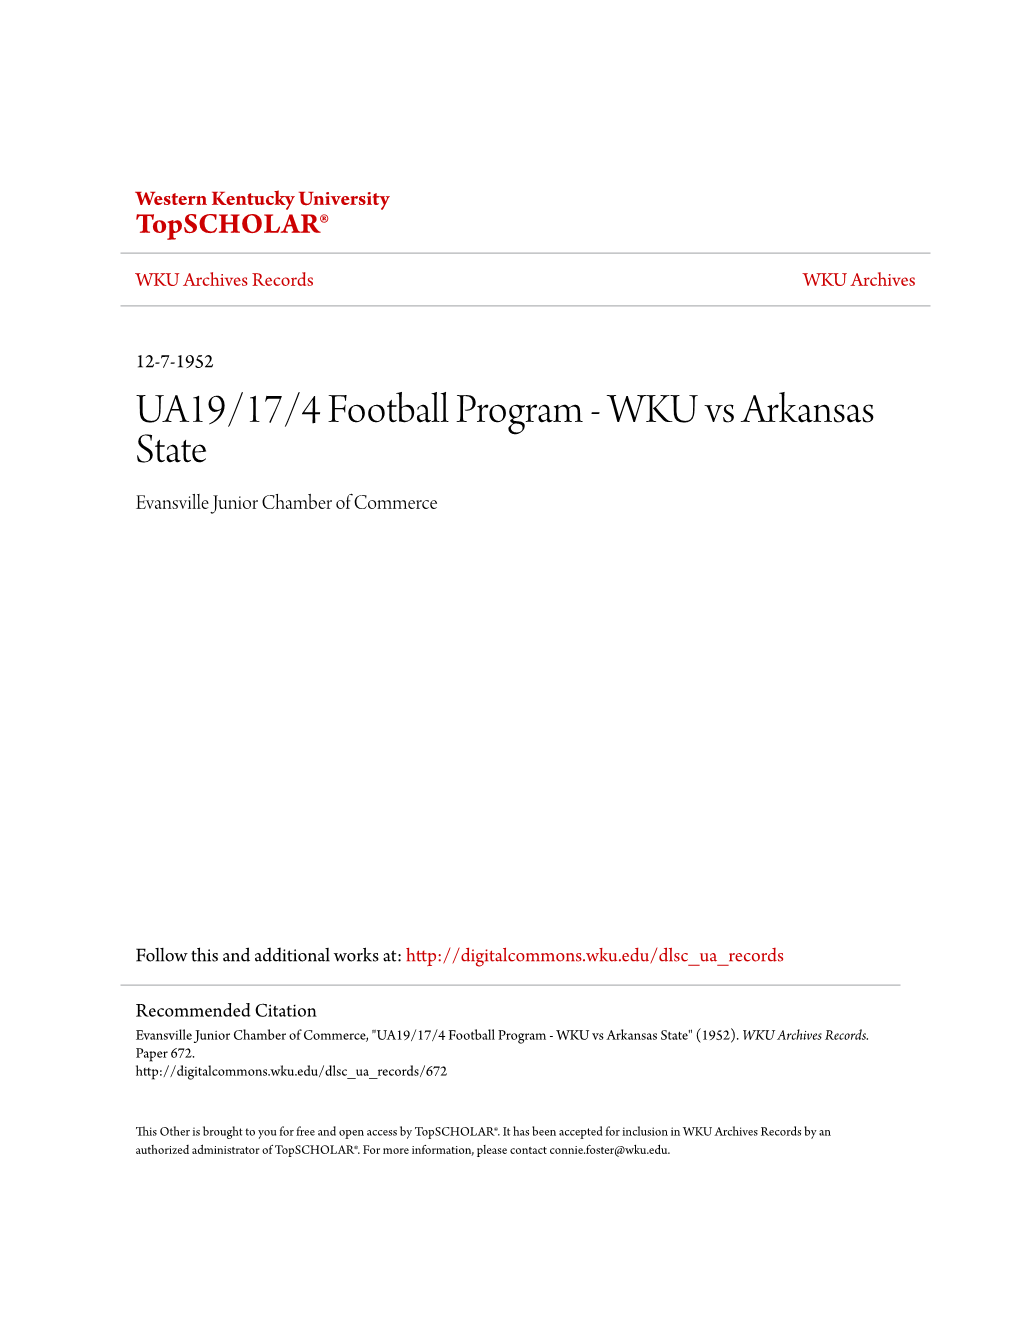 UA19/17/4 Football Program - WKU Vs Arkansas State Evansville Junior Chamber of Commerce